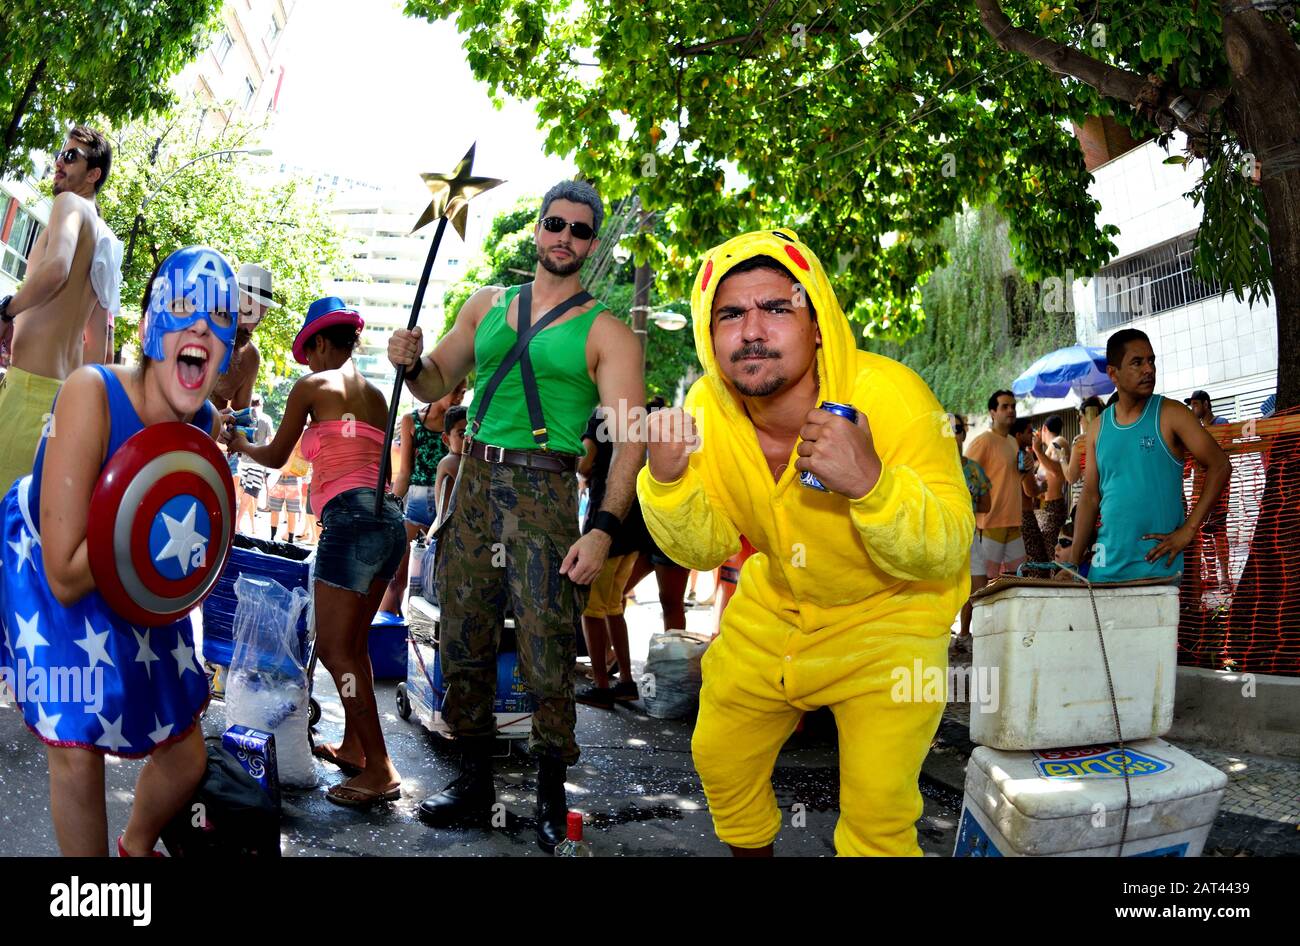 Amérique du Sud, Brésil - 30 janvier 2016 : de heureux fêtards se sont mis dans l'esprit du Carnaval lors d'un défilé de rue tenu à Rio de Janeiro. Banque D'Images